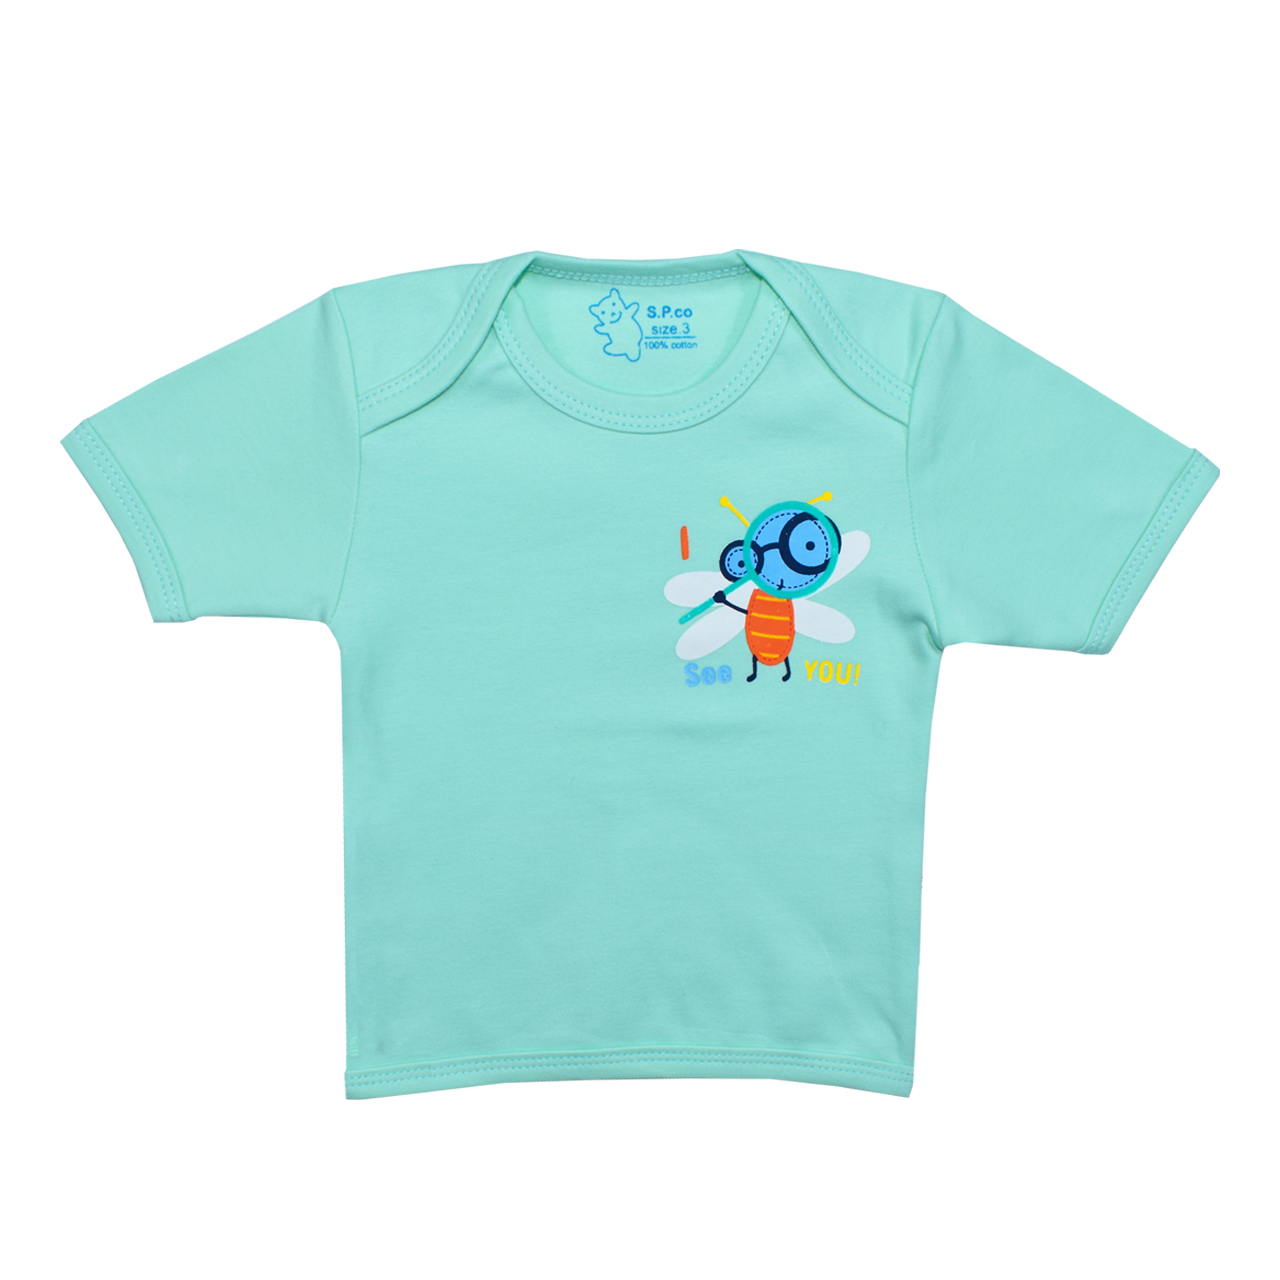 تی شرت آستین کوتاه نوزادی اسپیکو کد 300 -2 بسته دو عددی -  - 6